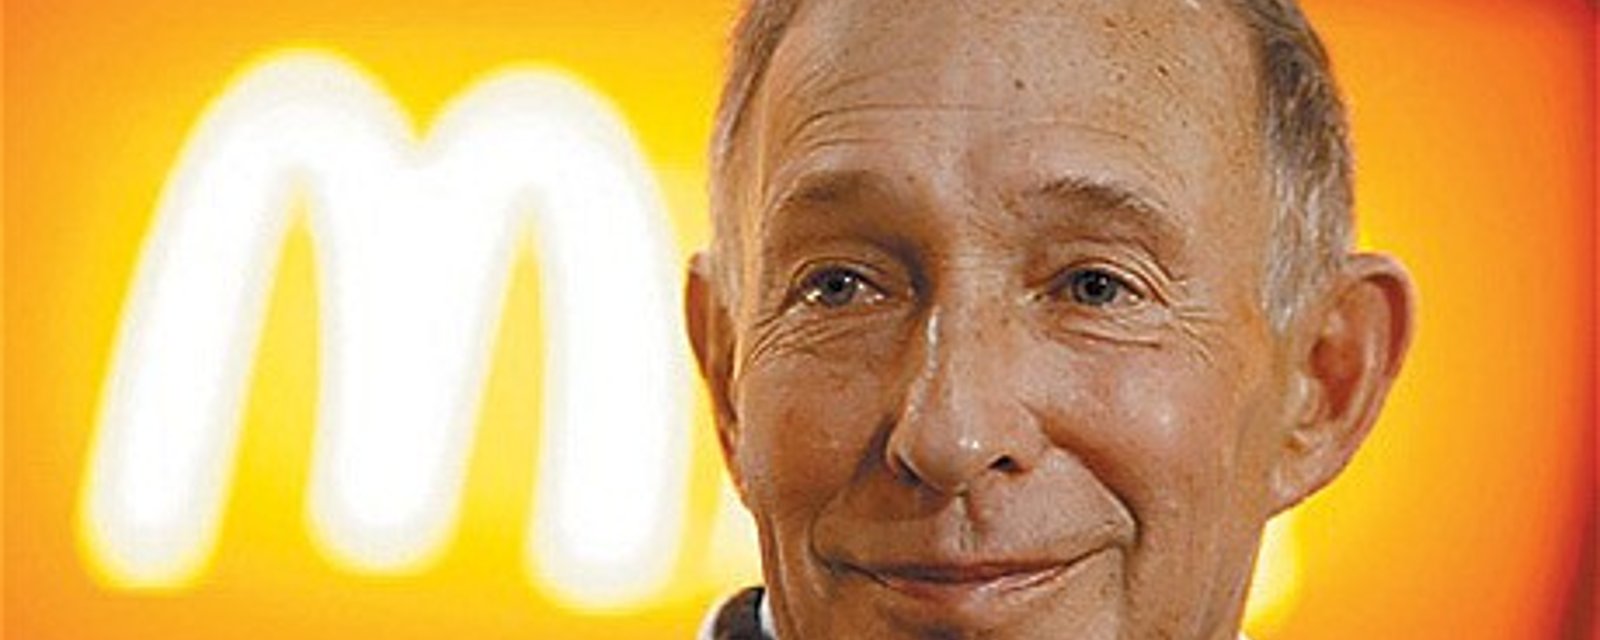 Le fondateur de McDonald's Canada meurt à 86 ans